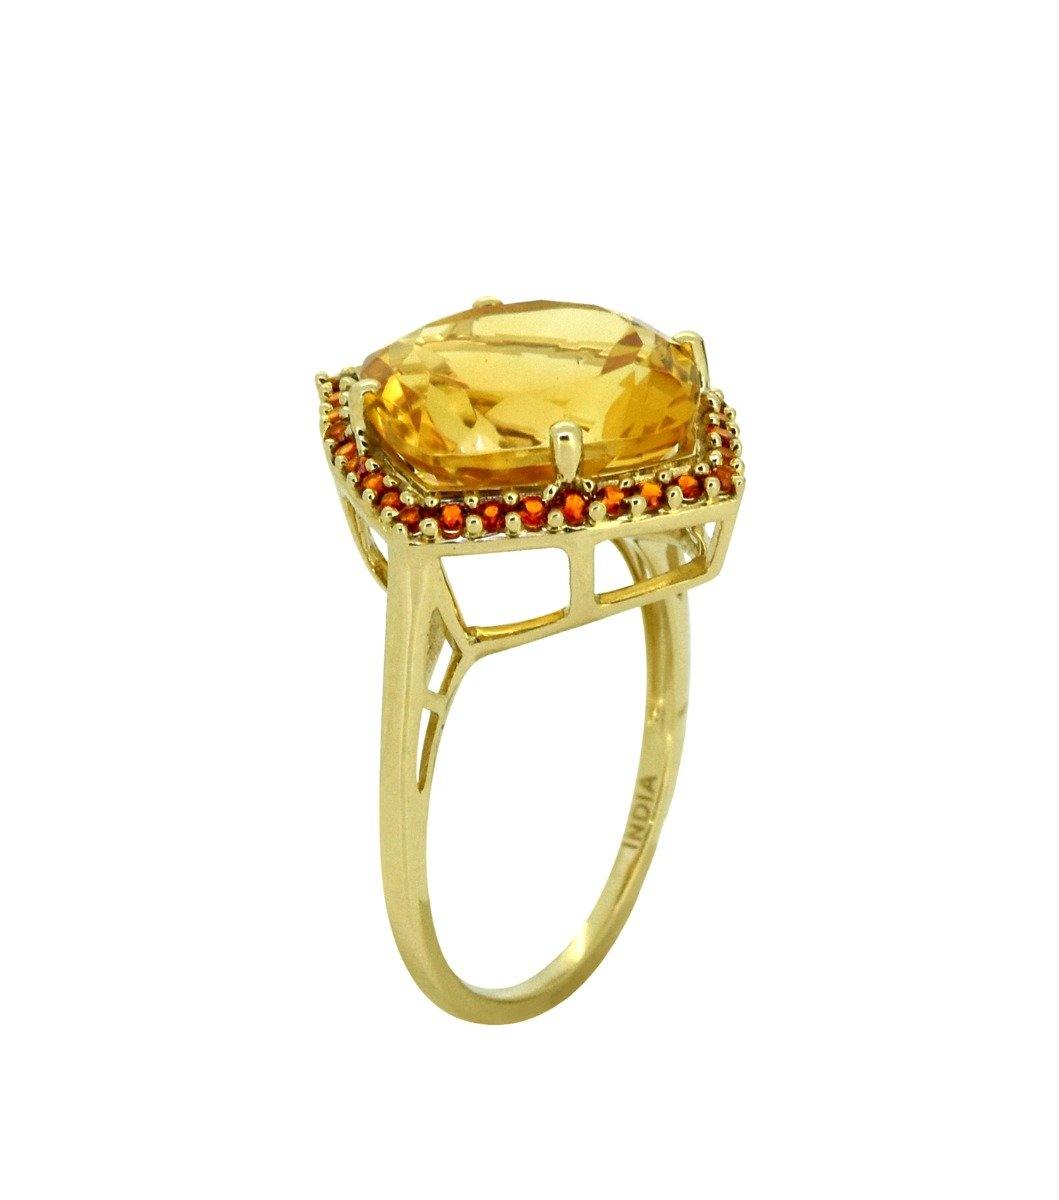 6.31 Ct Citrine Garnet Solid 14k Yellow Gold Ring Jewelry - YoTreasure